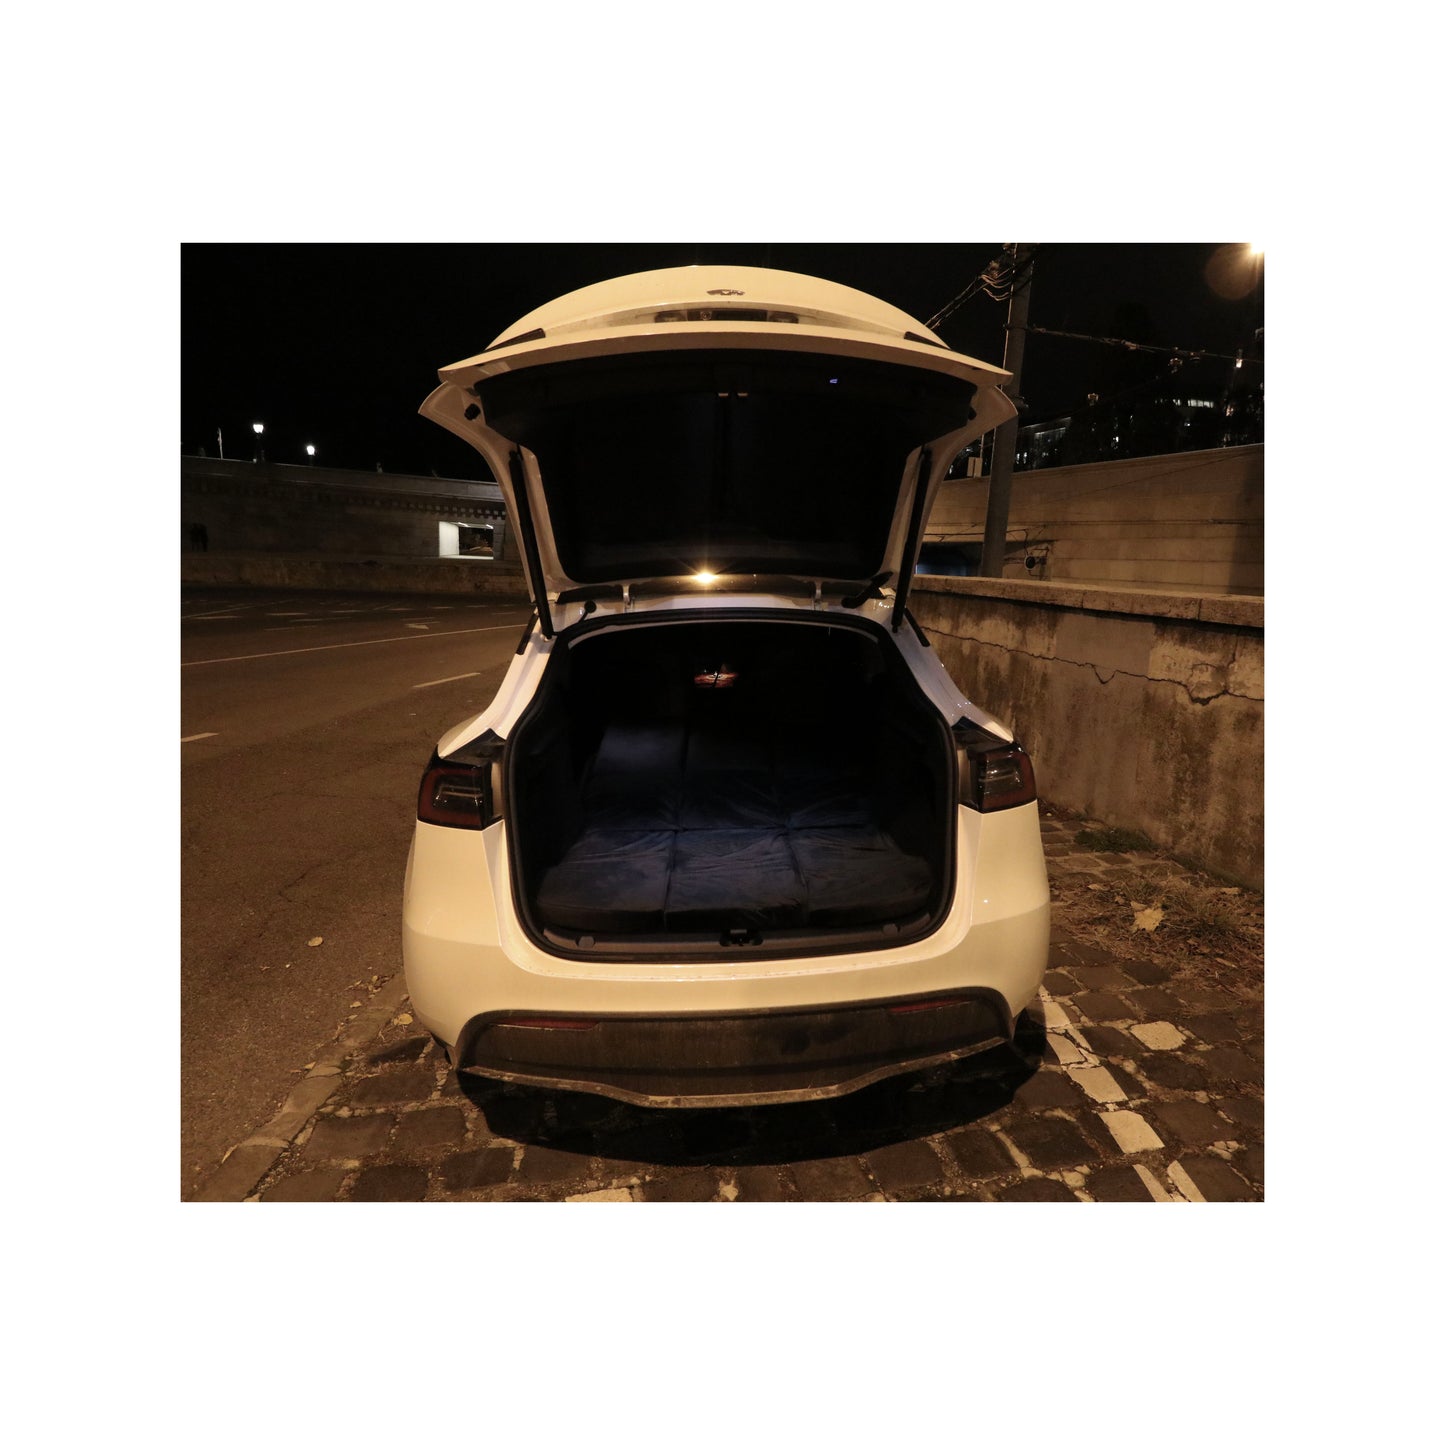 EV-MATS Basic CAMP SET za Tesla Model Y uključuje Tesla madrac, vodootporna torba koja se uklapa u stražnji prtljažnik Tesla Modela Y, plahtu, dekicu, 2 jastuka i jastučnicu